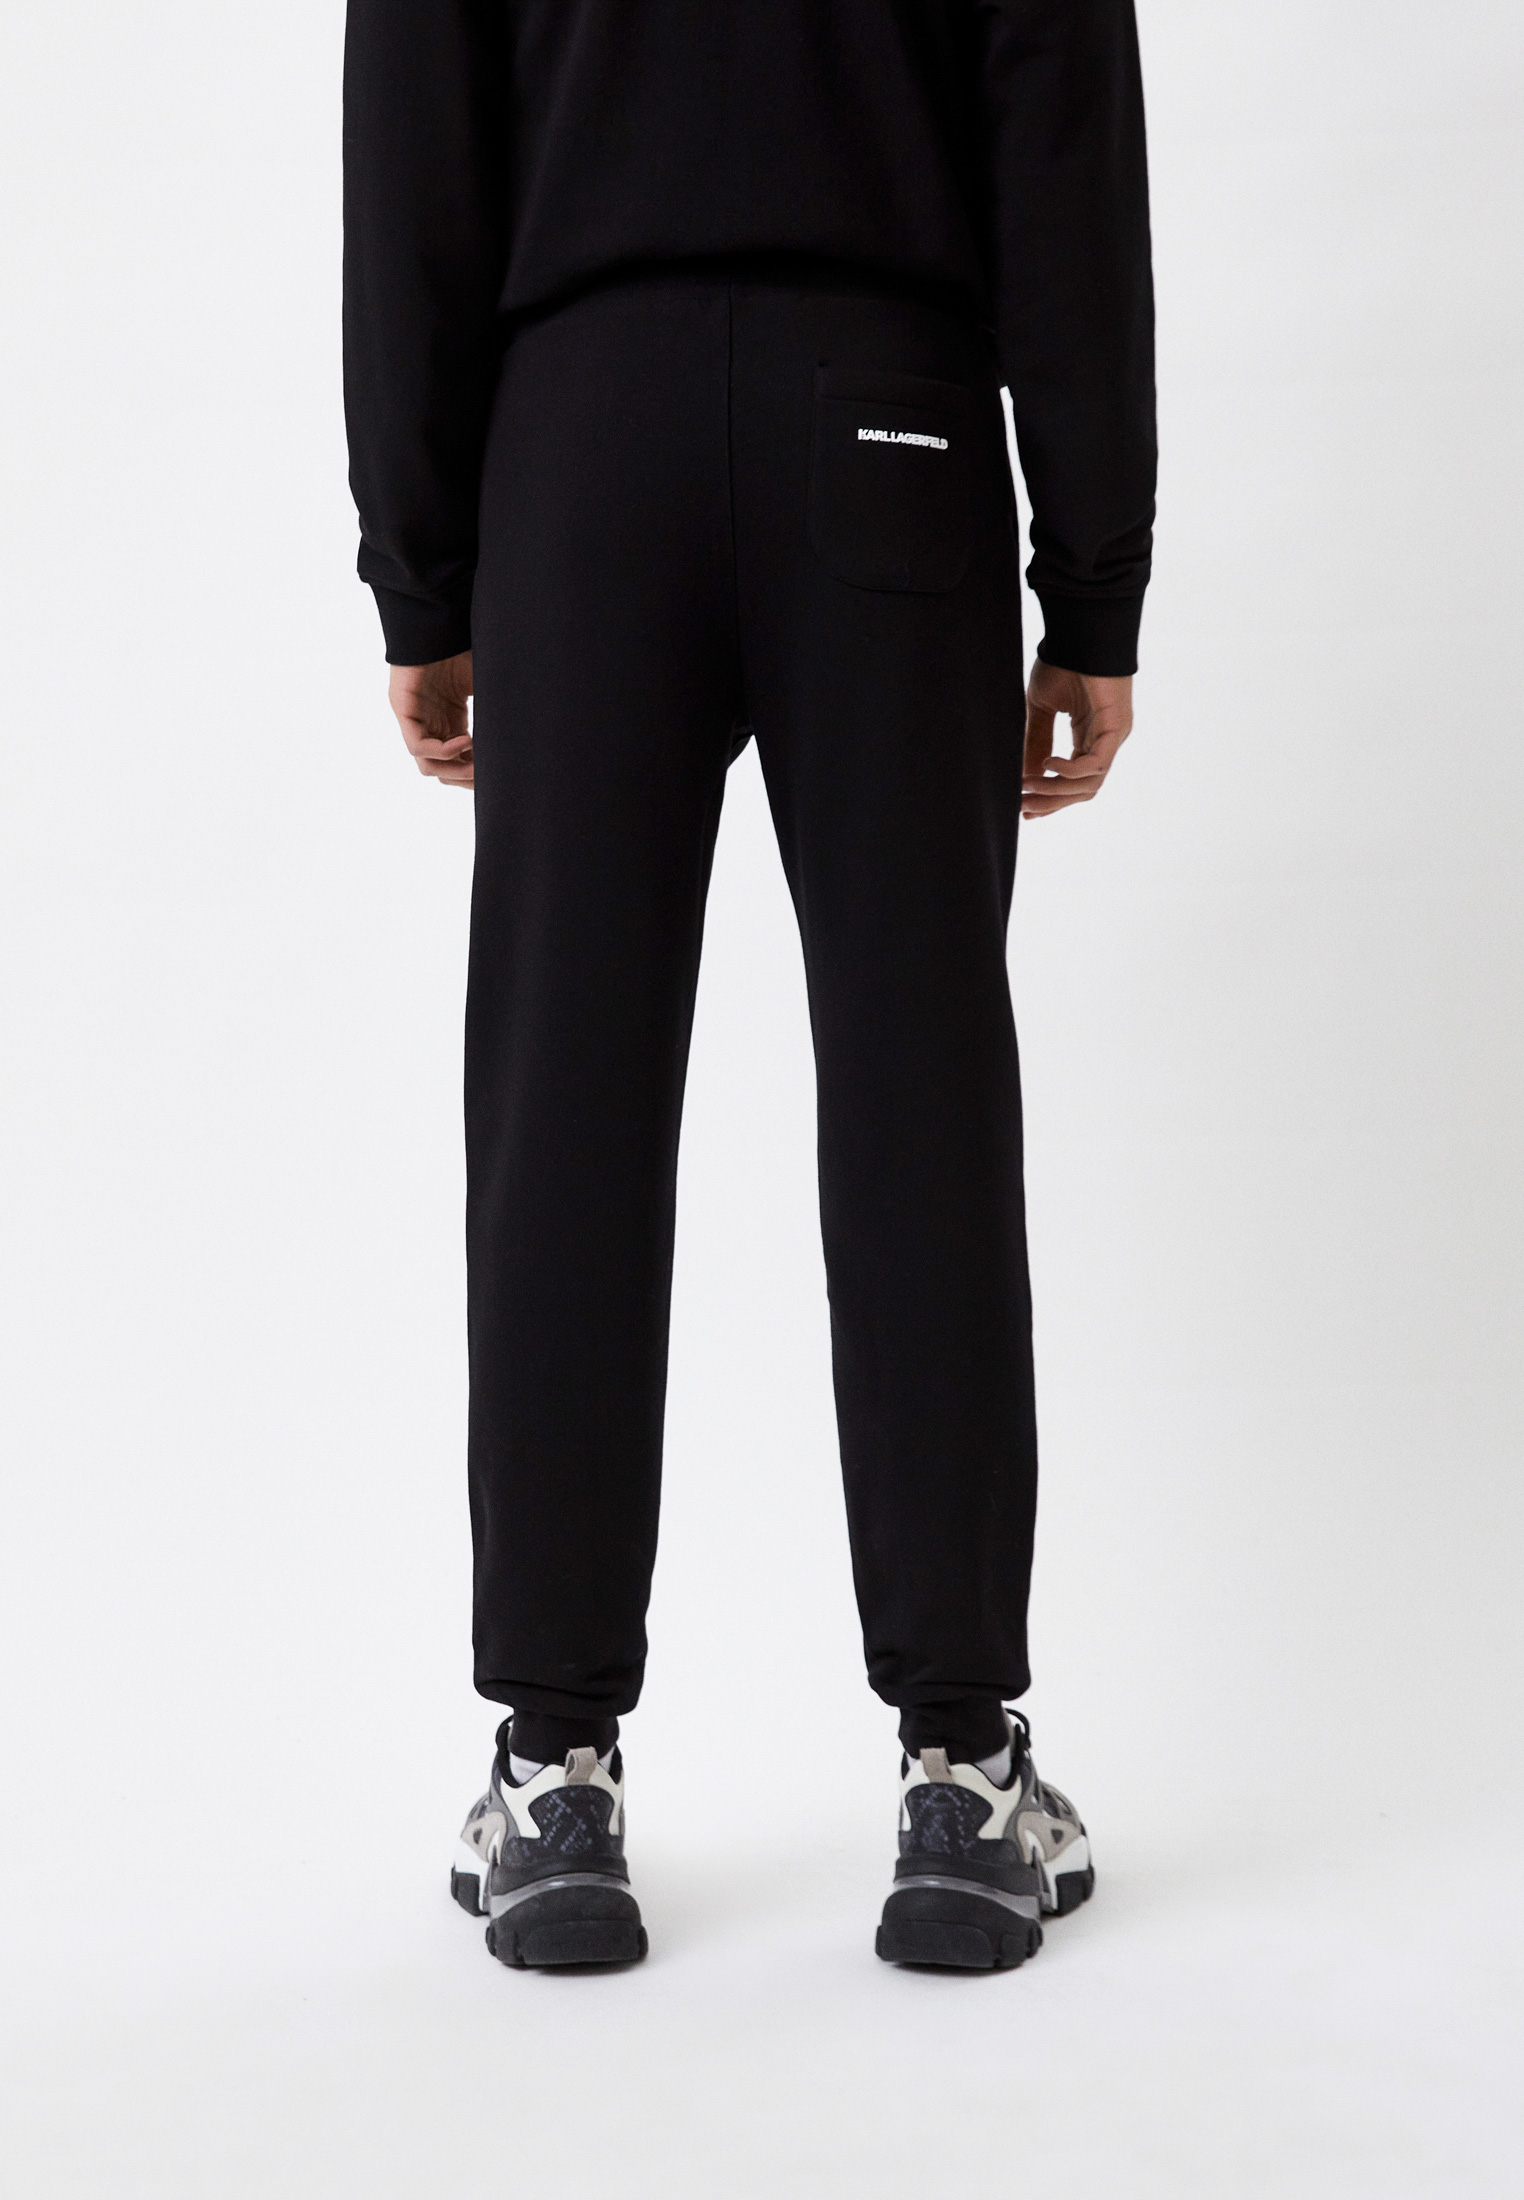 Мужские спортивные брюки Karl Lagerfeld 705081-531900: изображение 3